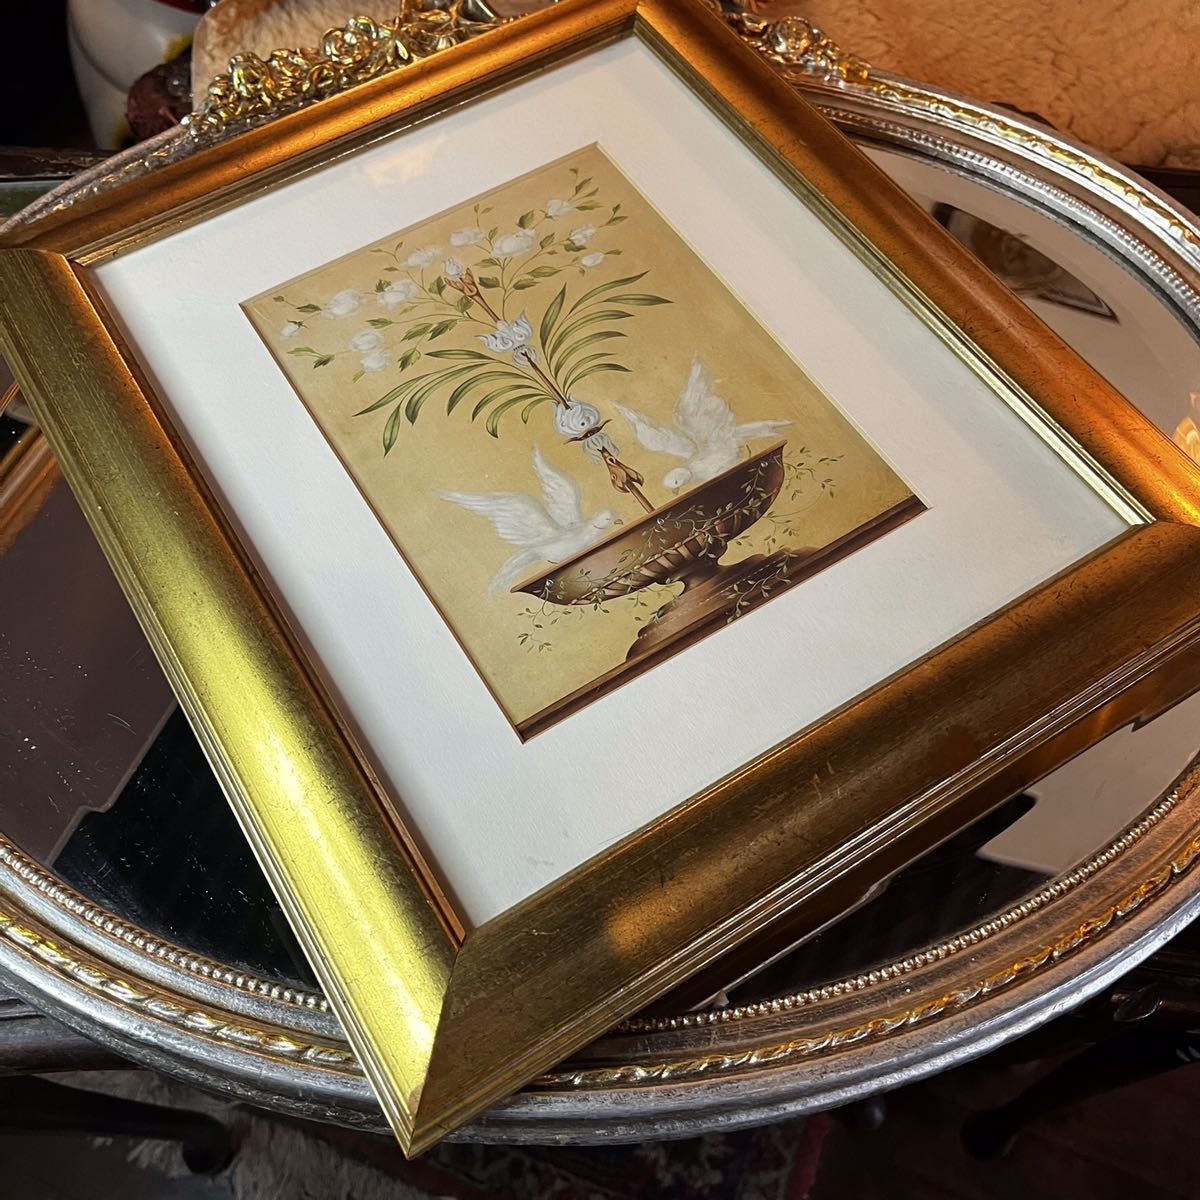 Yufuin Антикварная итальянская картина в деревянной золотой раме Птица, играющая в воде, Размер H 36W31D, кухня, Посуда, Хранилище, Аксессуары для кухни, может